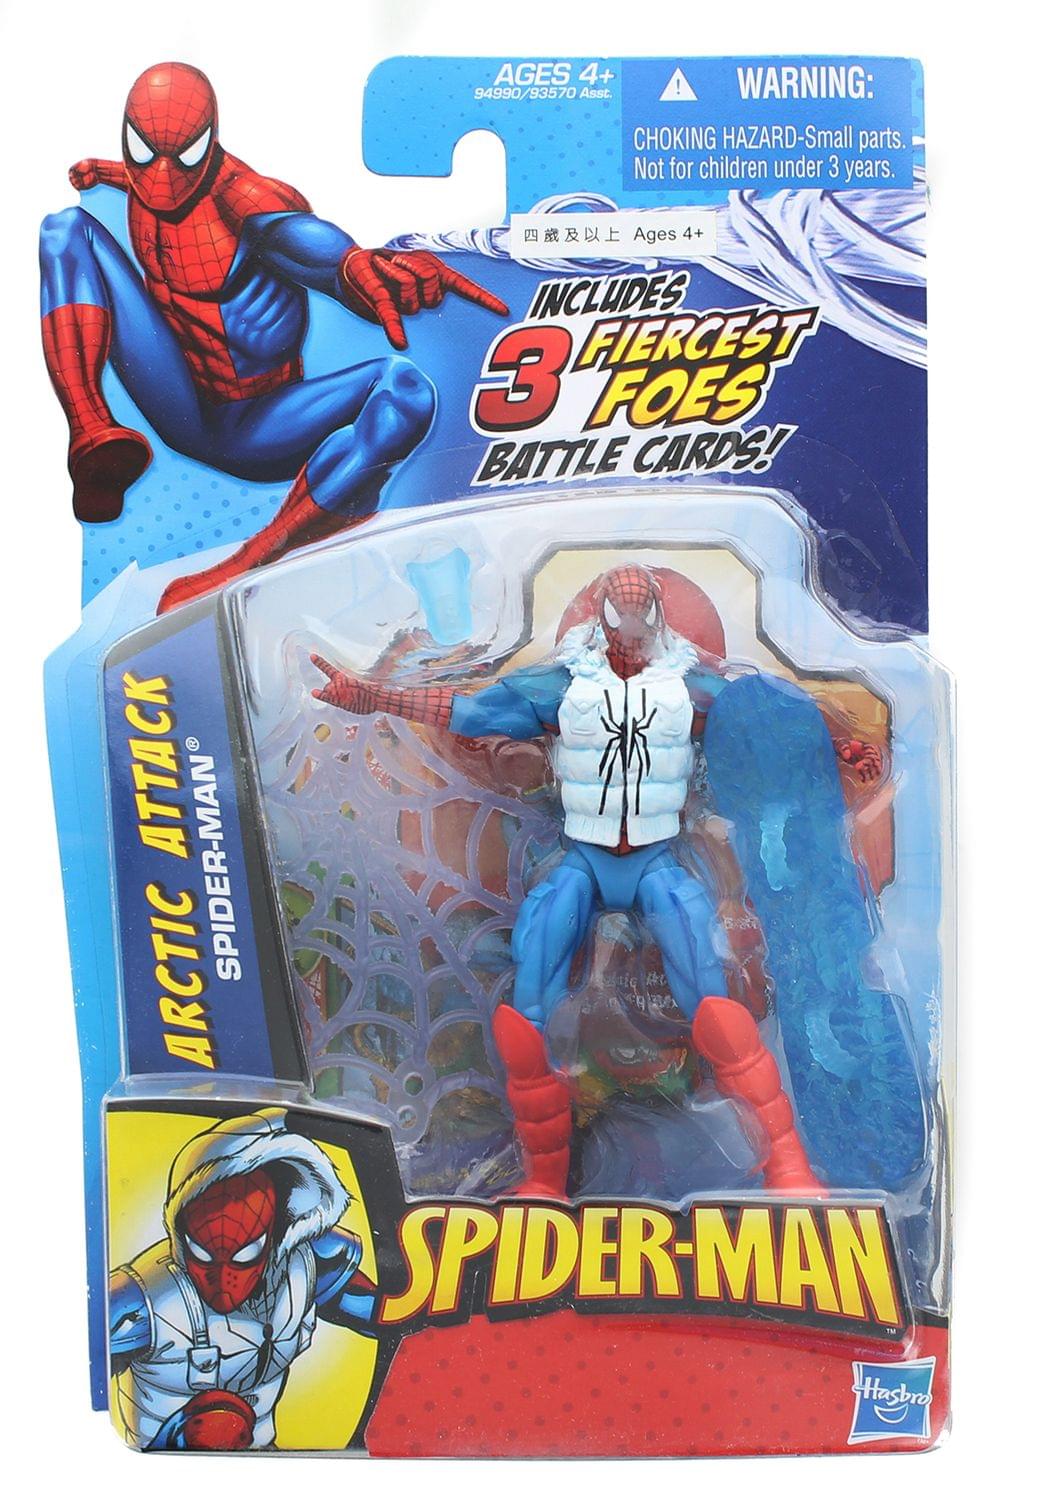 Marvel Legends Retro Spider-Man Amazing Fantasy 3.75 Figure IN